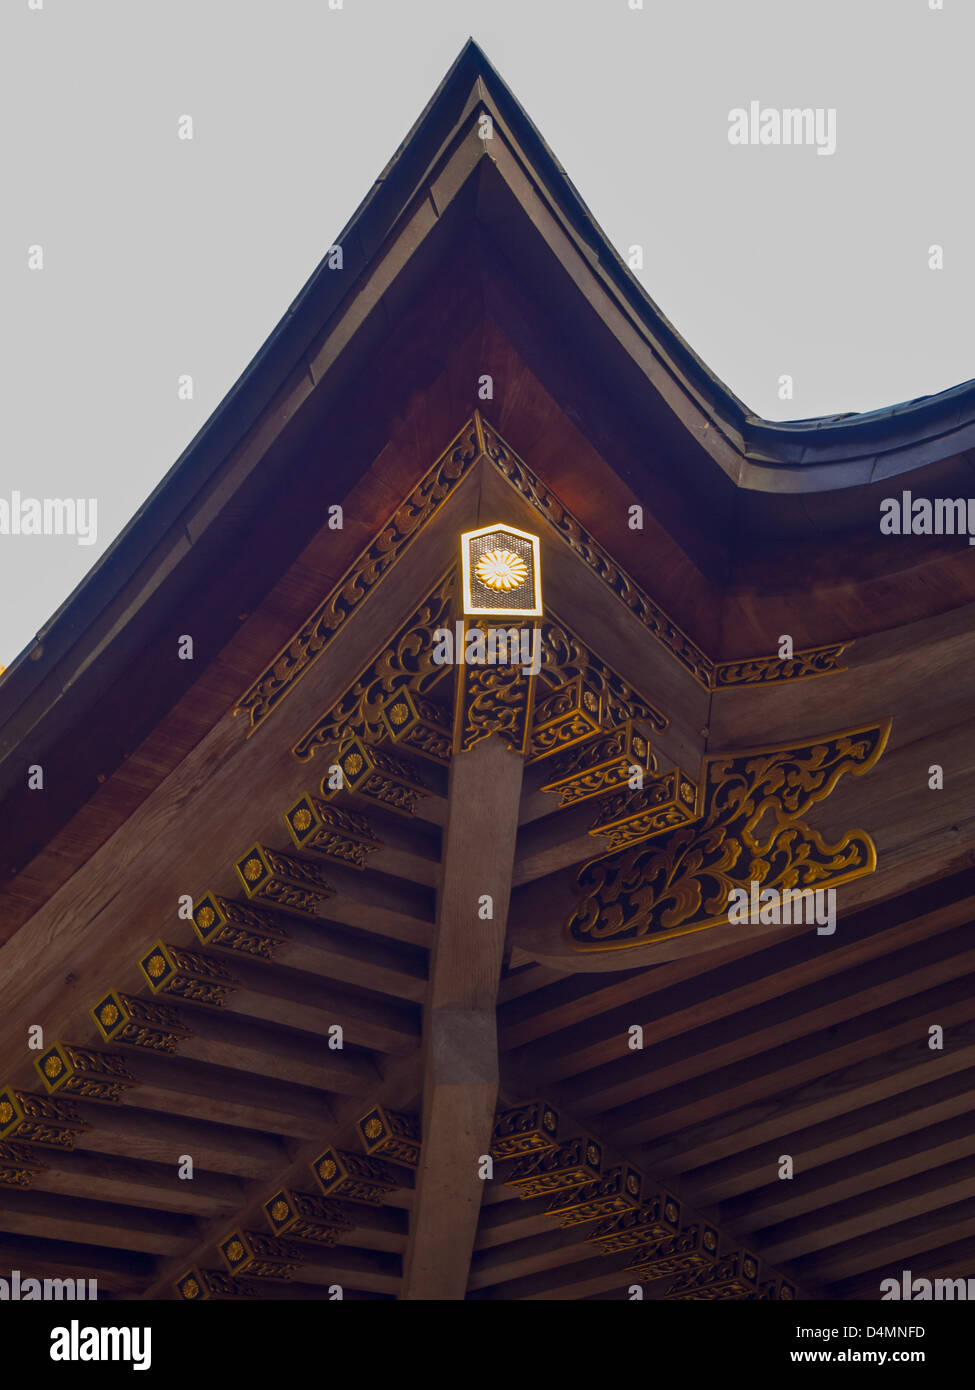 Shinto Schrein Architektur. Dachtraufe mit kunstvollen Dekoration von Sparren und Pfetten. Hodosan Schrein Japan Nagatoro, Japan. Stockfoto